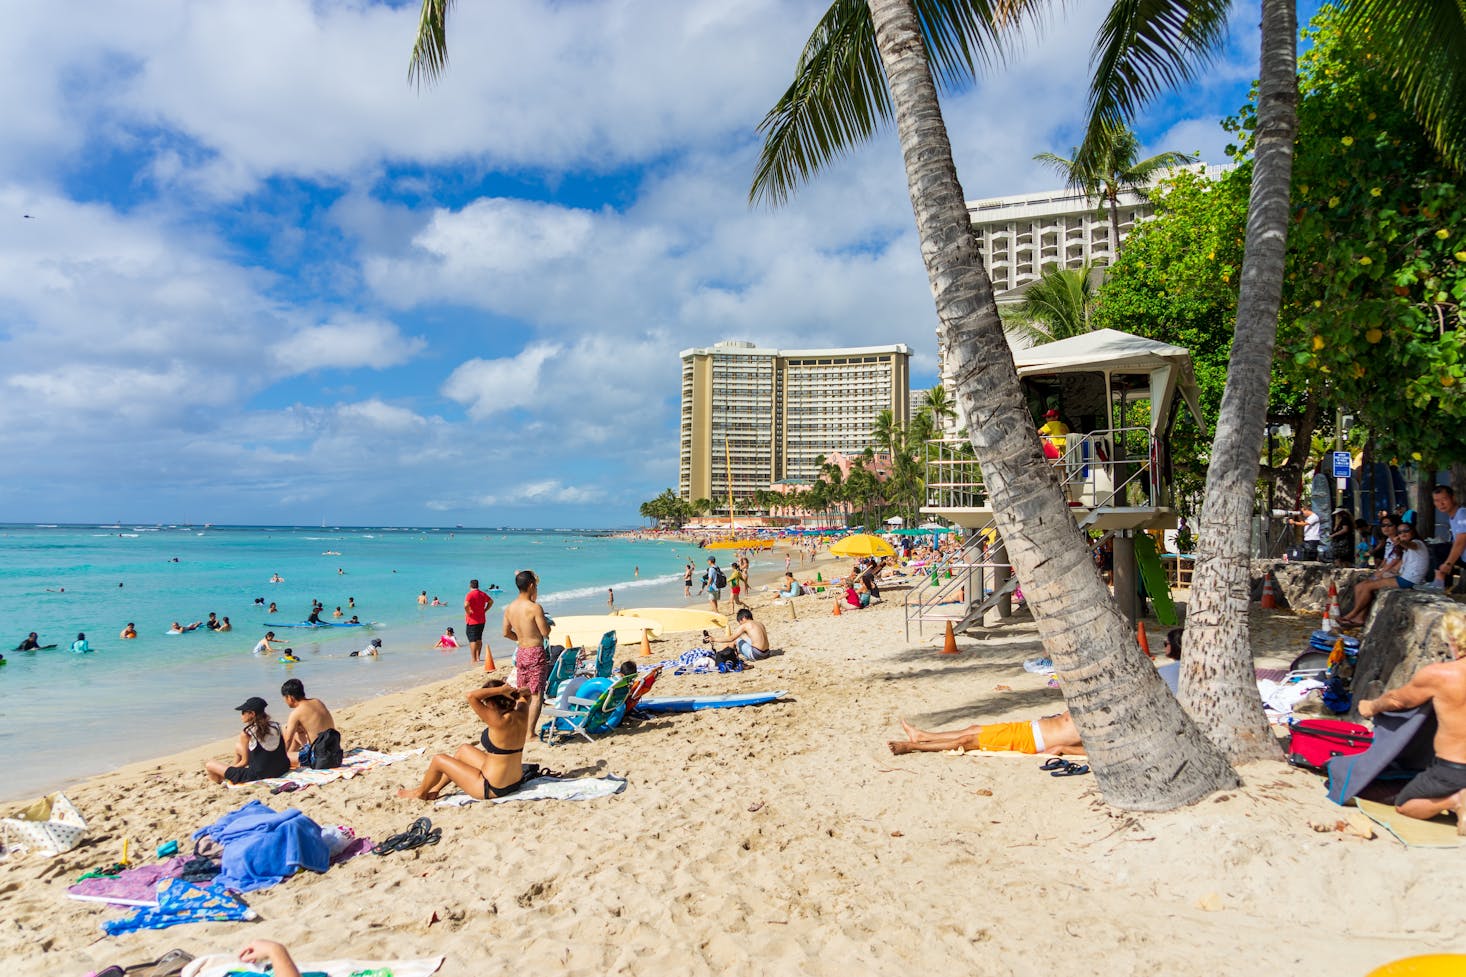 Waikiki Beach in Honolulu